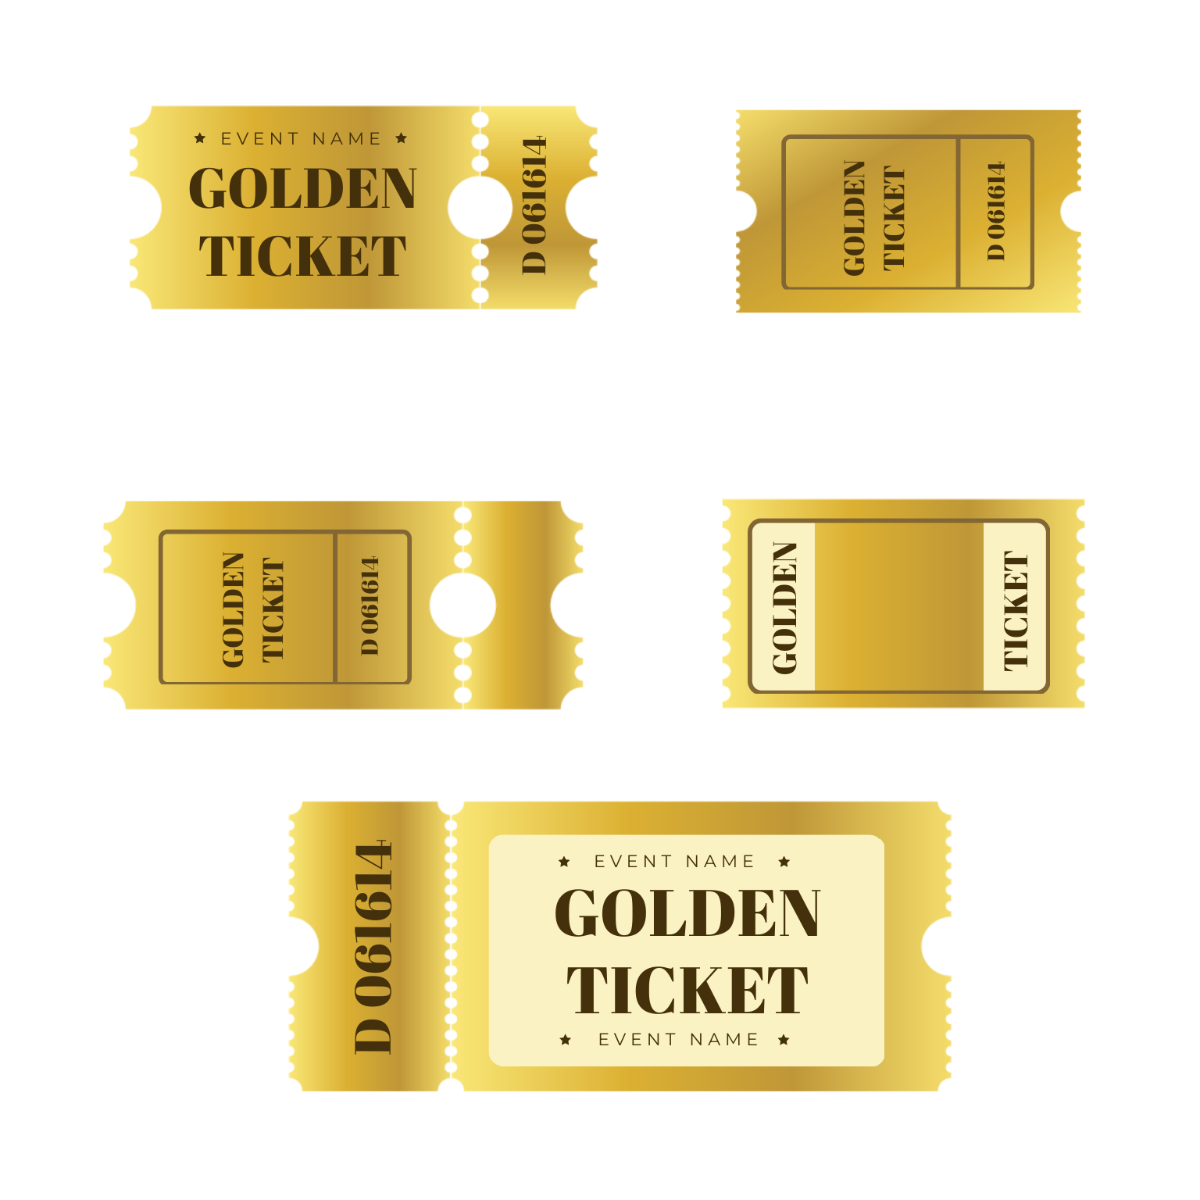 Free Golden Ticket Vector Template